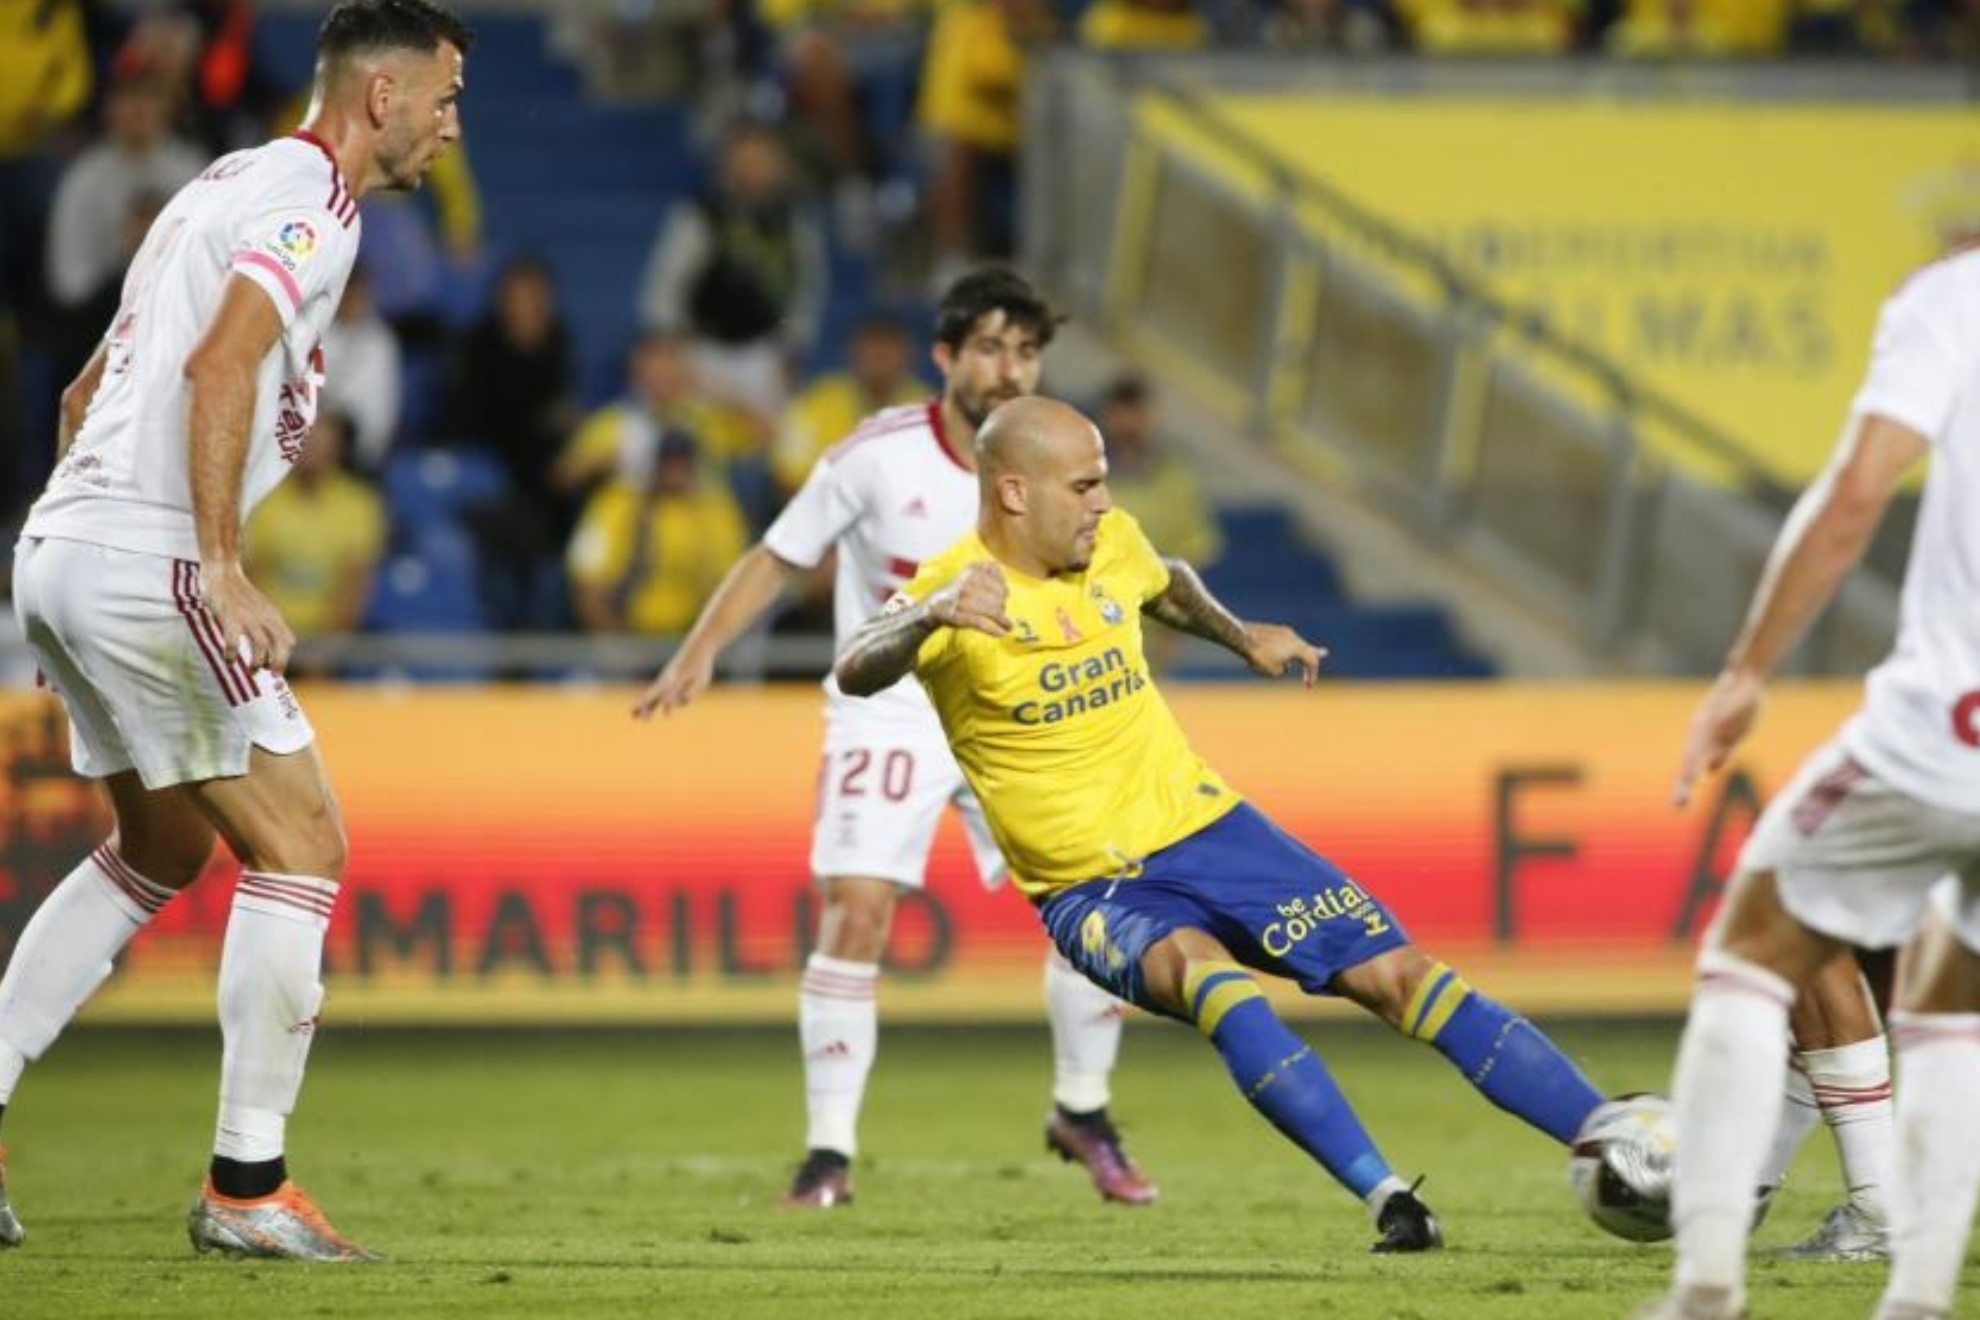 Sandro golpea el balón en un partido de Las Palmas.